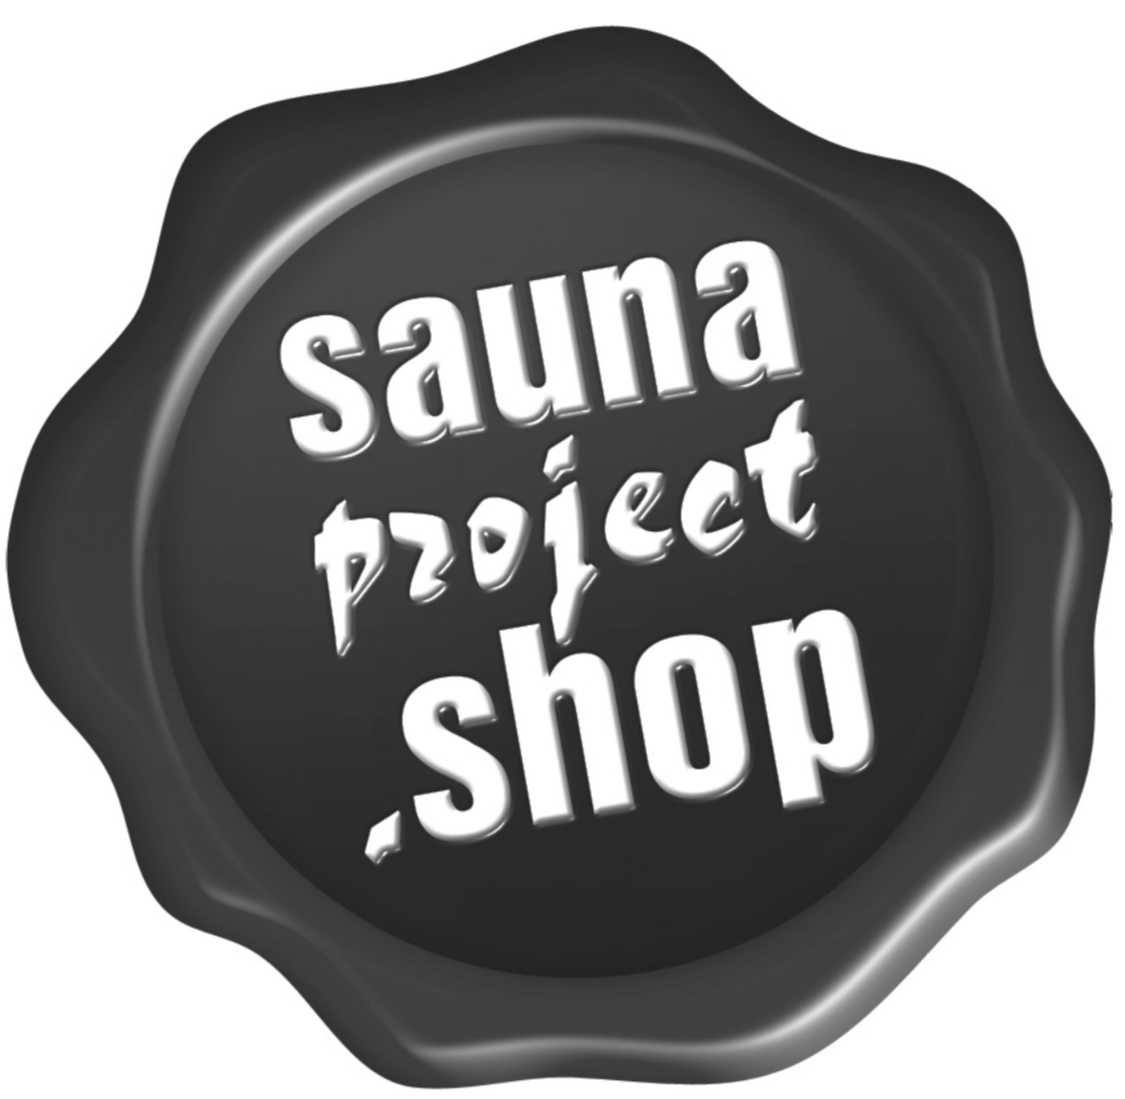 Pečeť Saunaproject za kvalitu